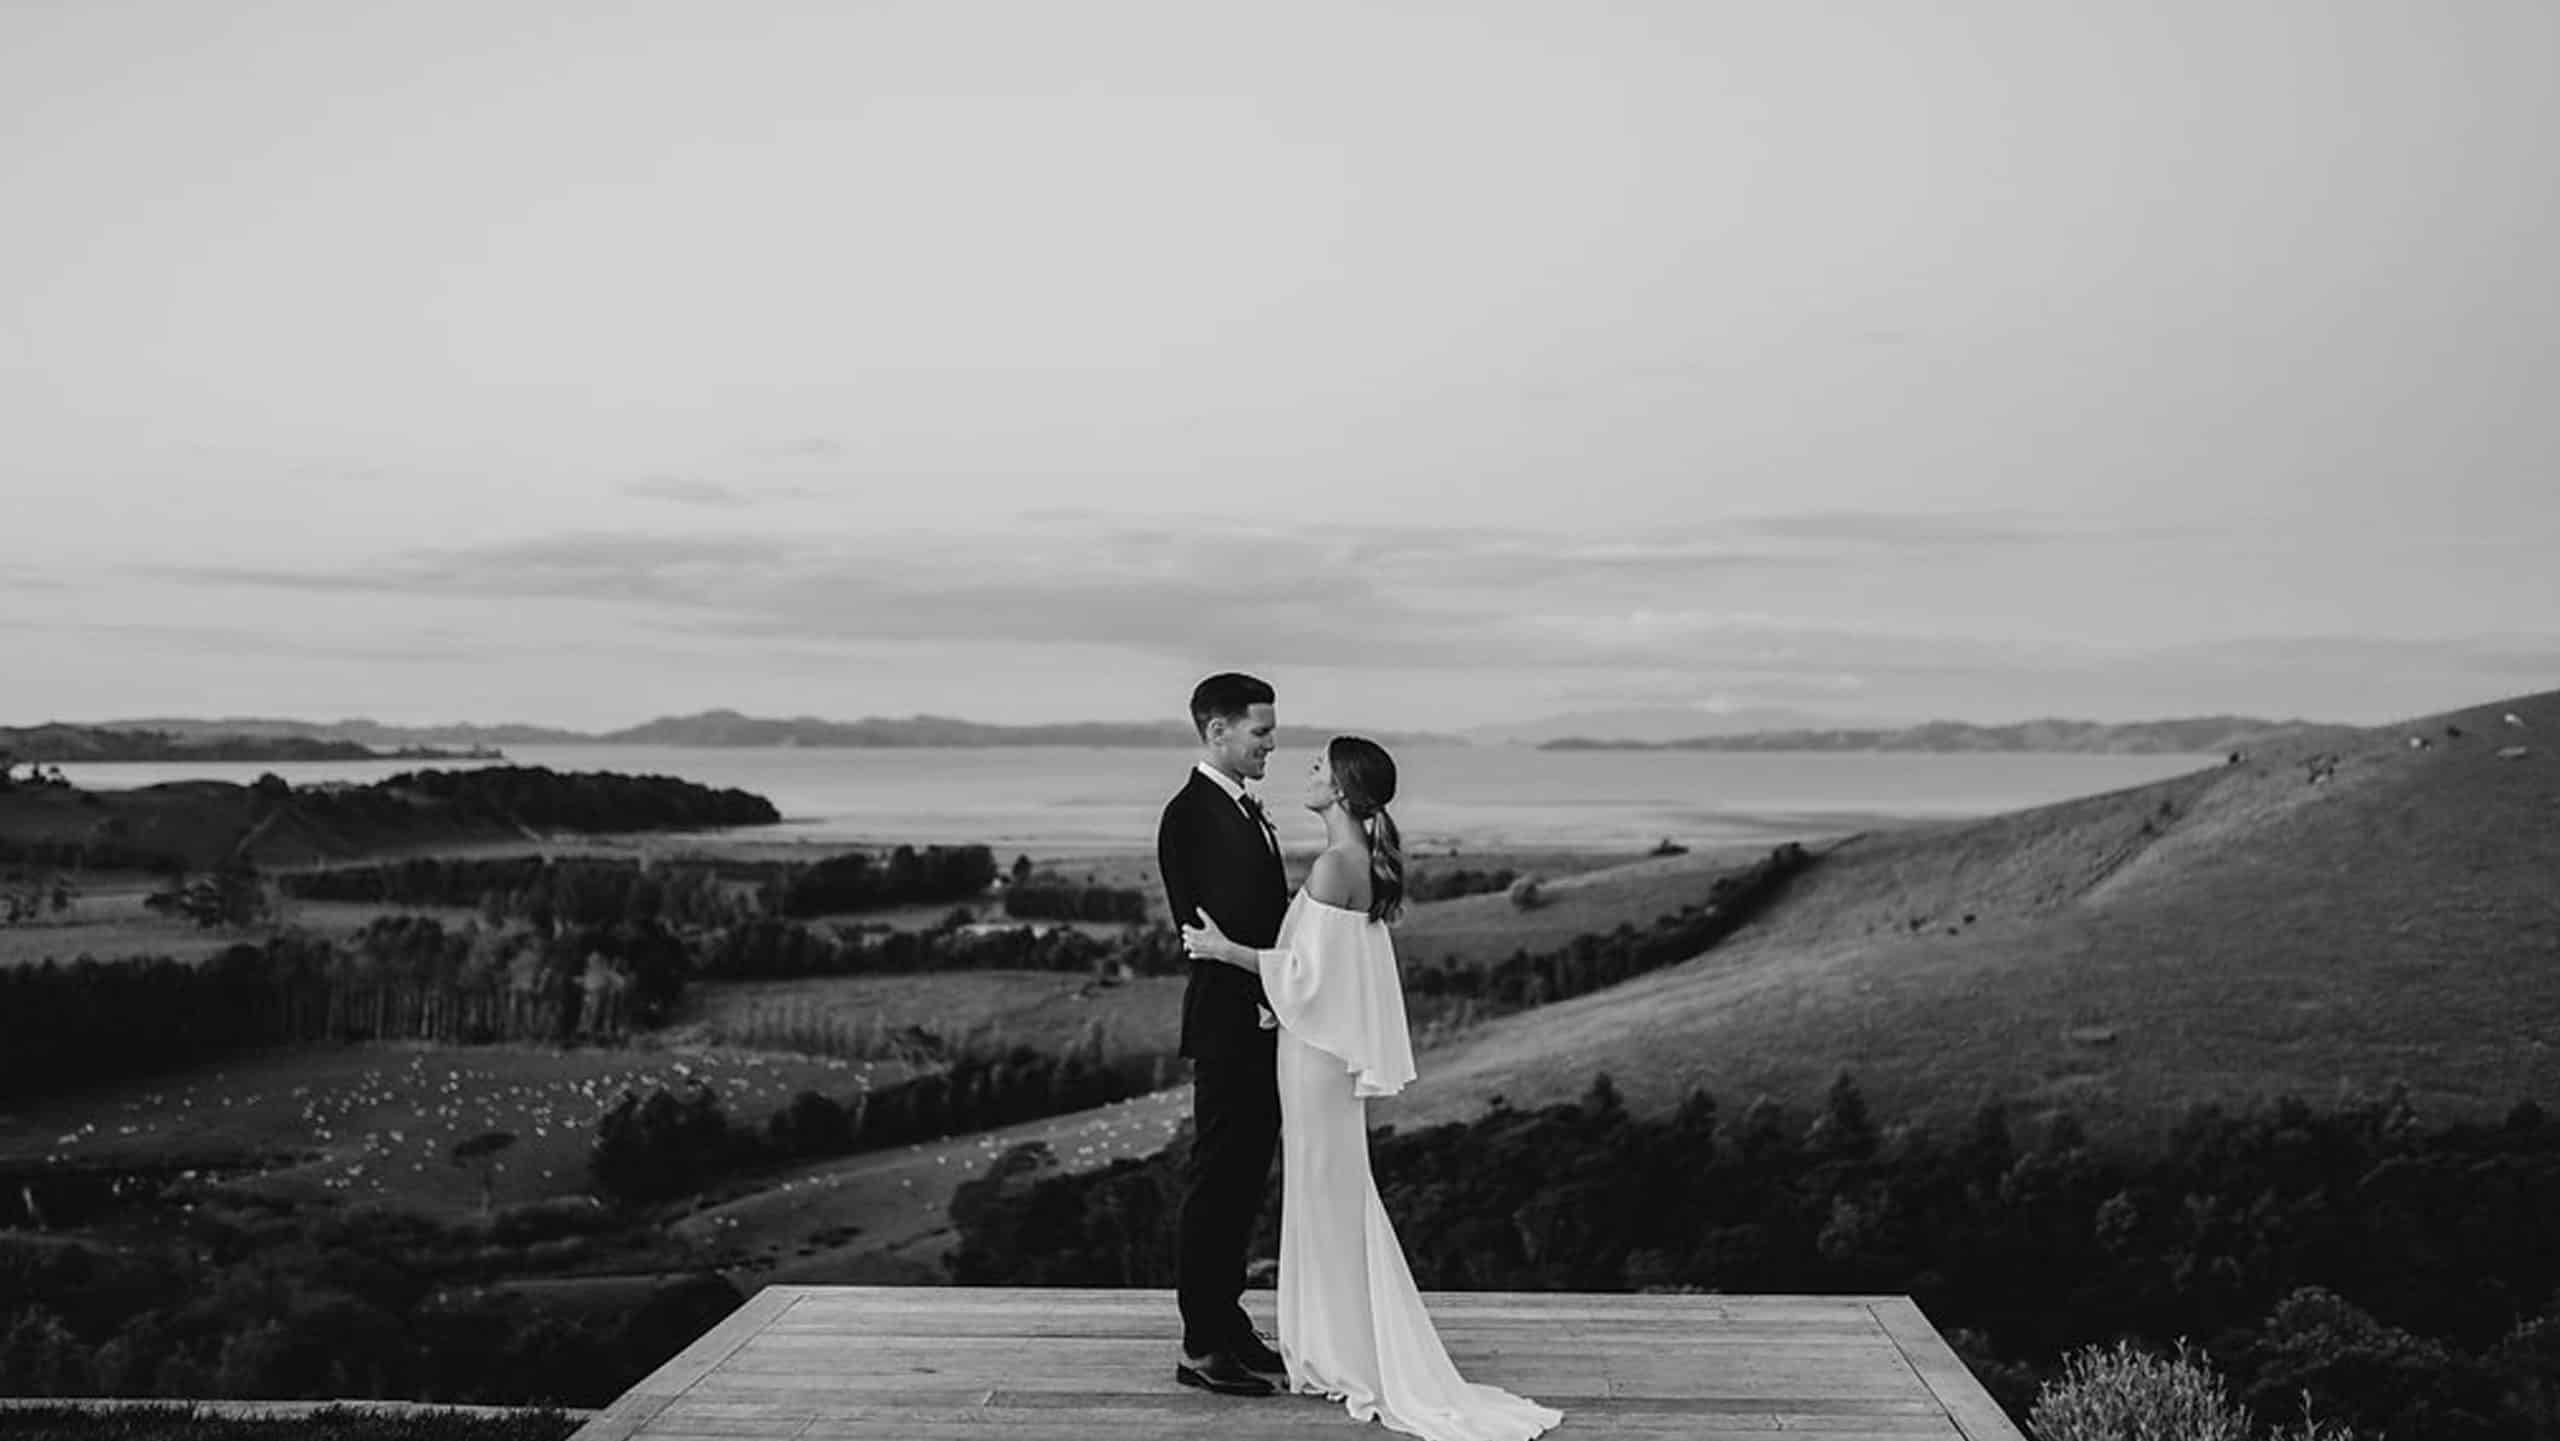 View, bride & groom